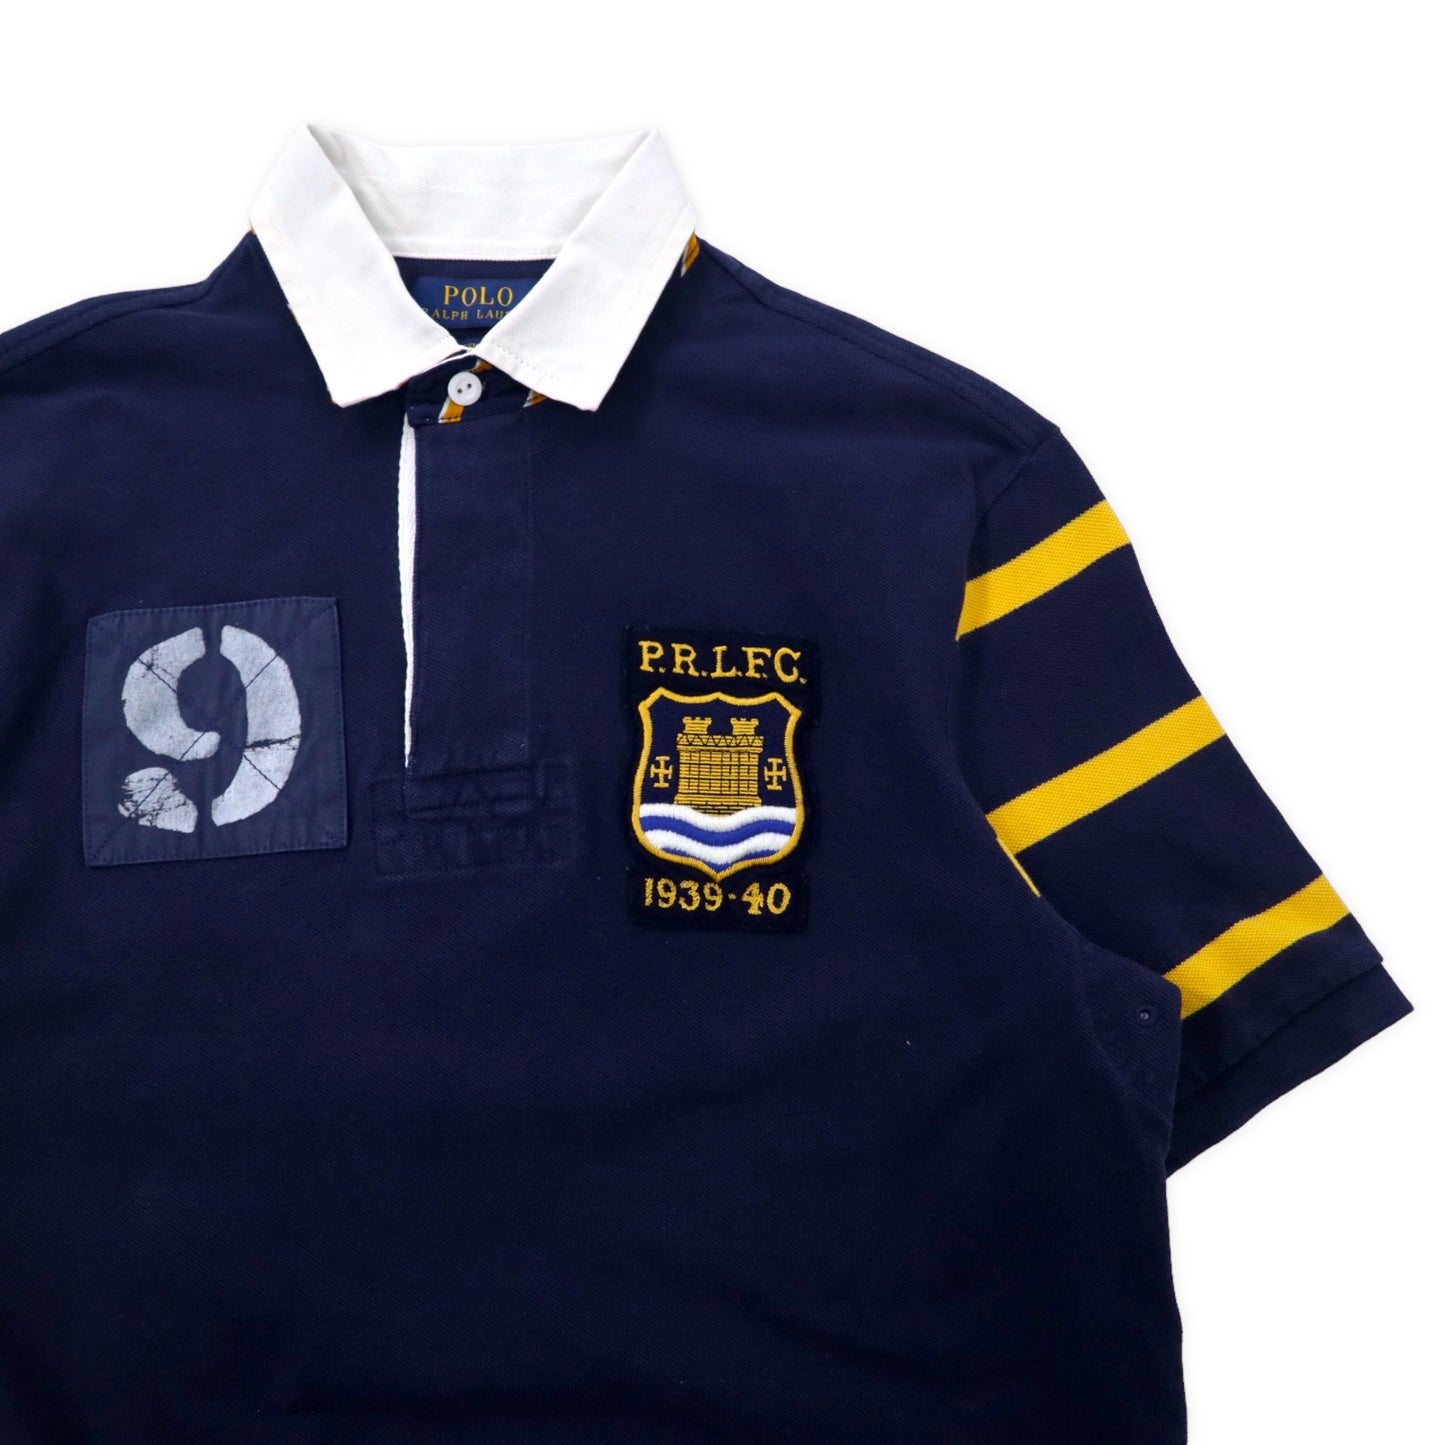 POLO RALPH LAUREN ポロシャツ S ネイビー コットン P.R.L.F.C. 1939-40 ナンバリング CLASSIC FIT